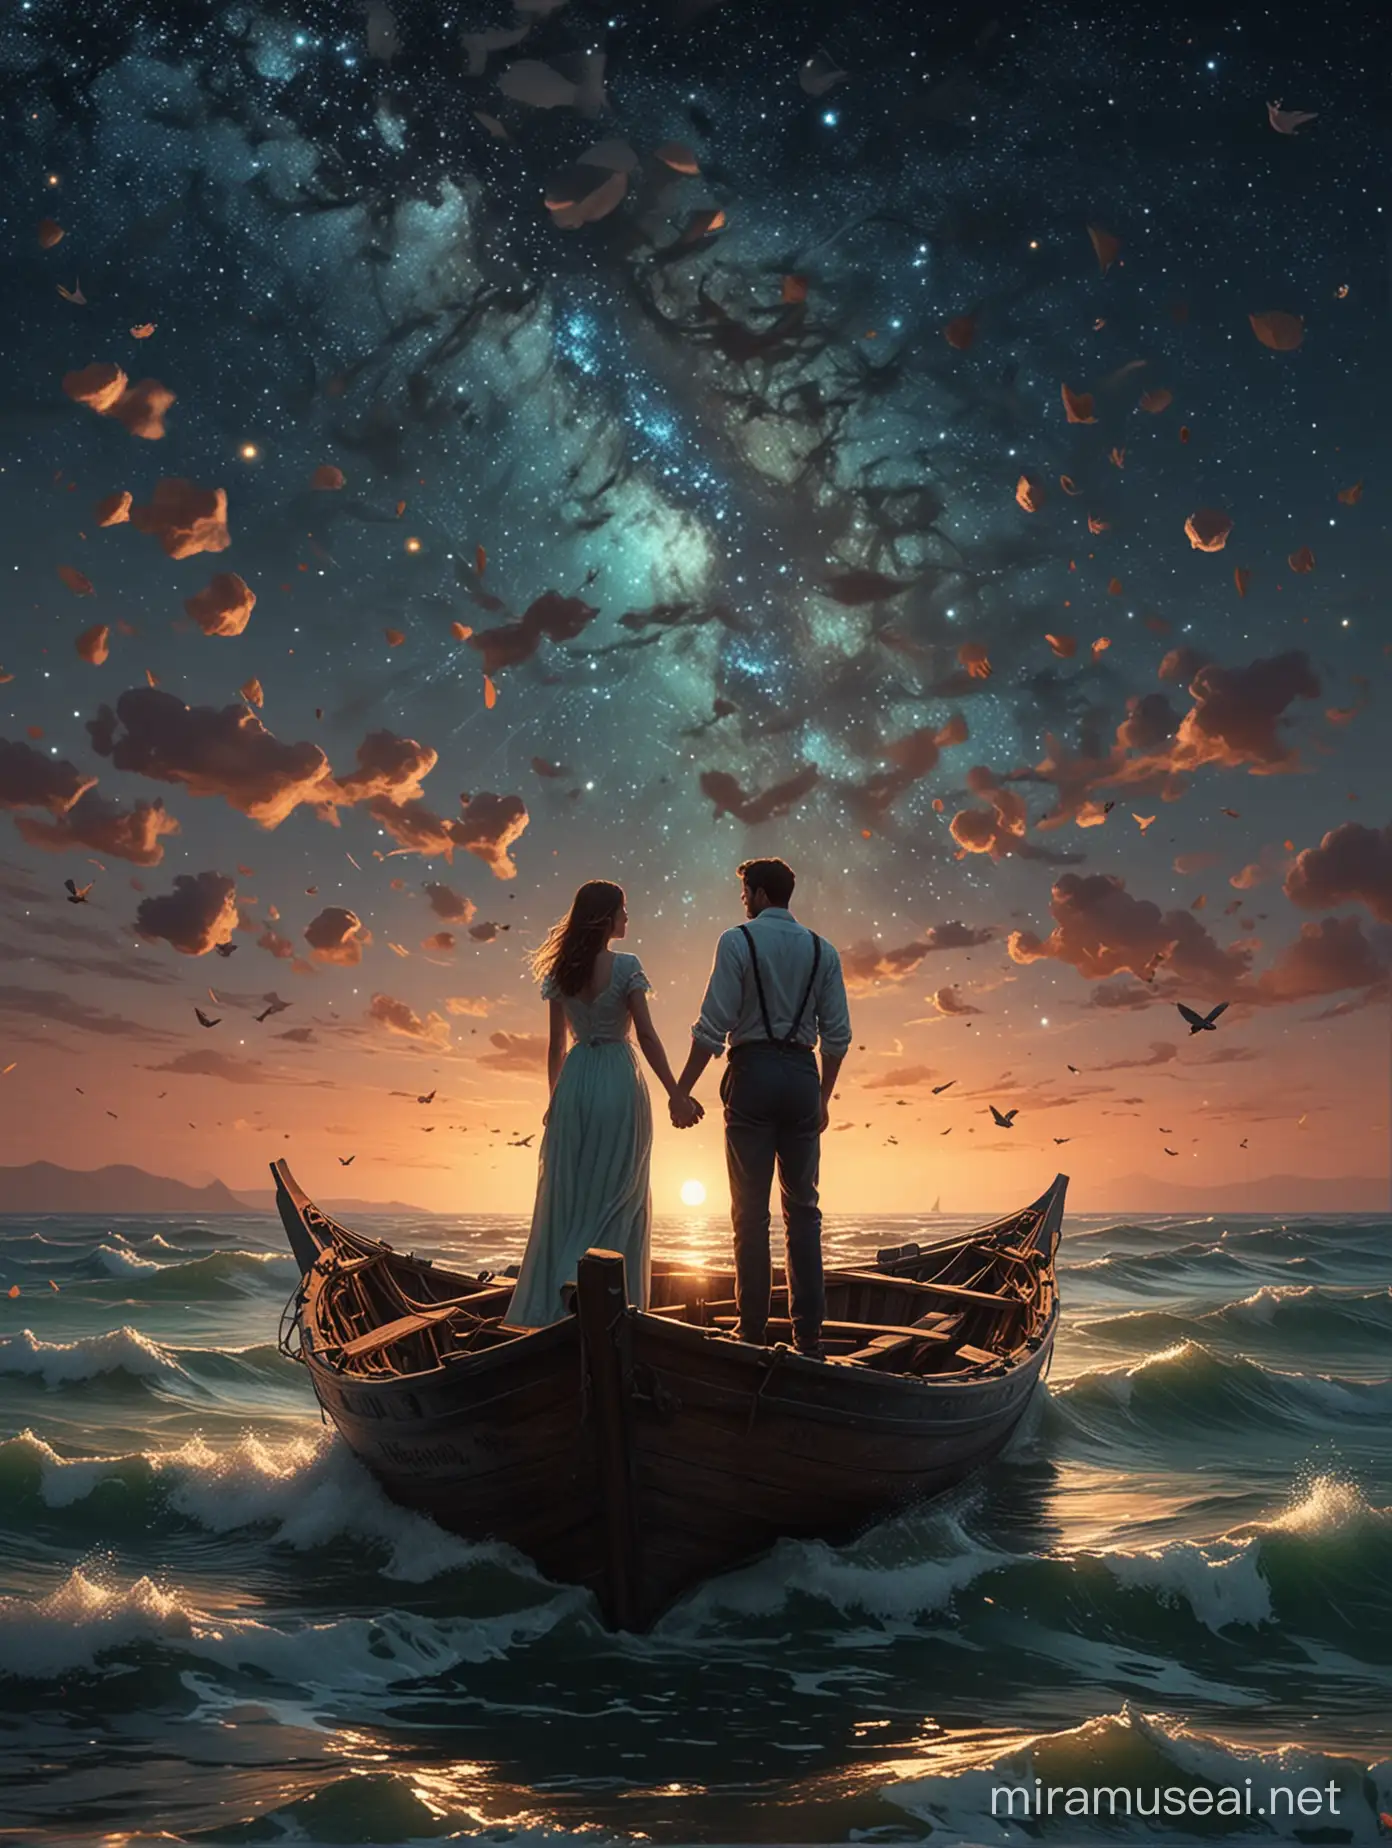 Eternal Love Story Under Starry Skies Romantic Voyage in Van Gogh Style